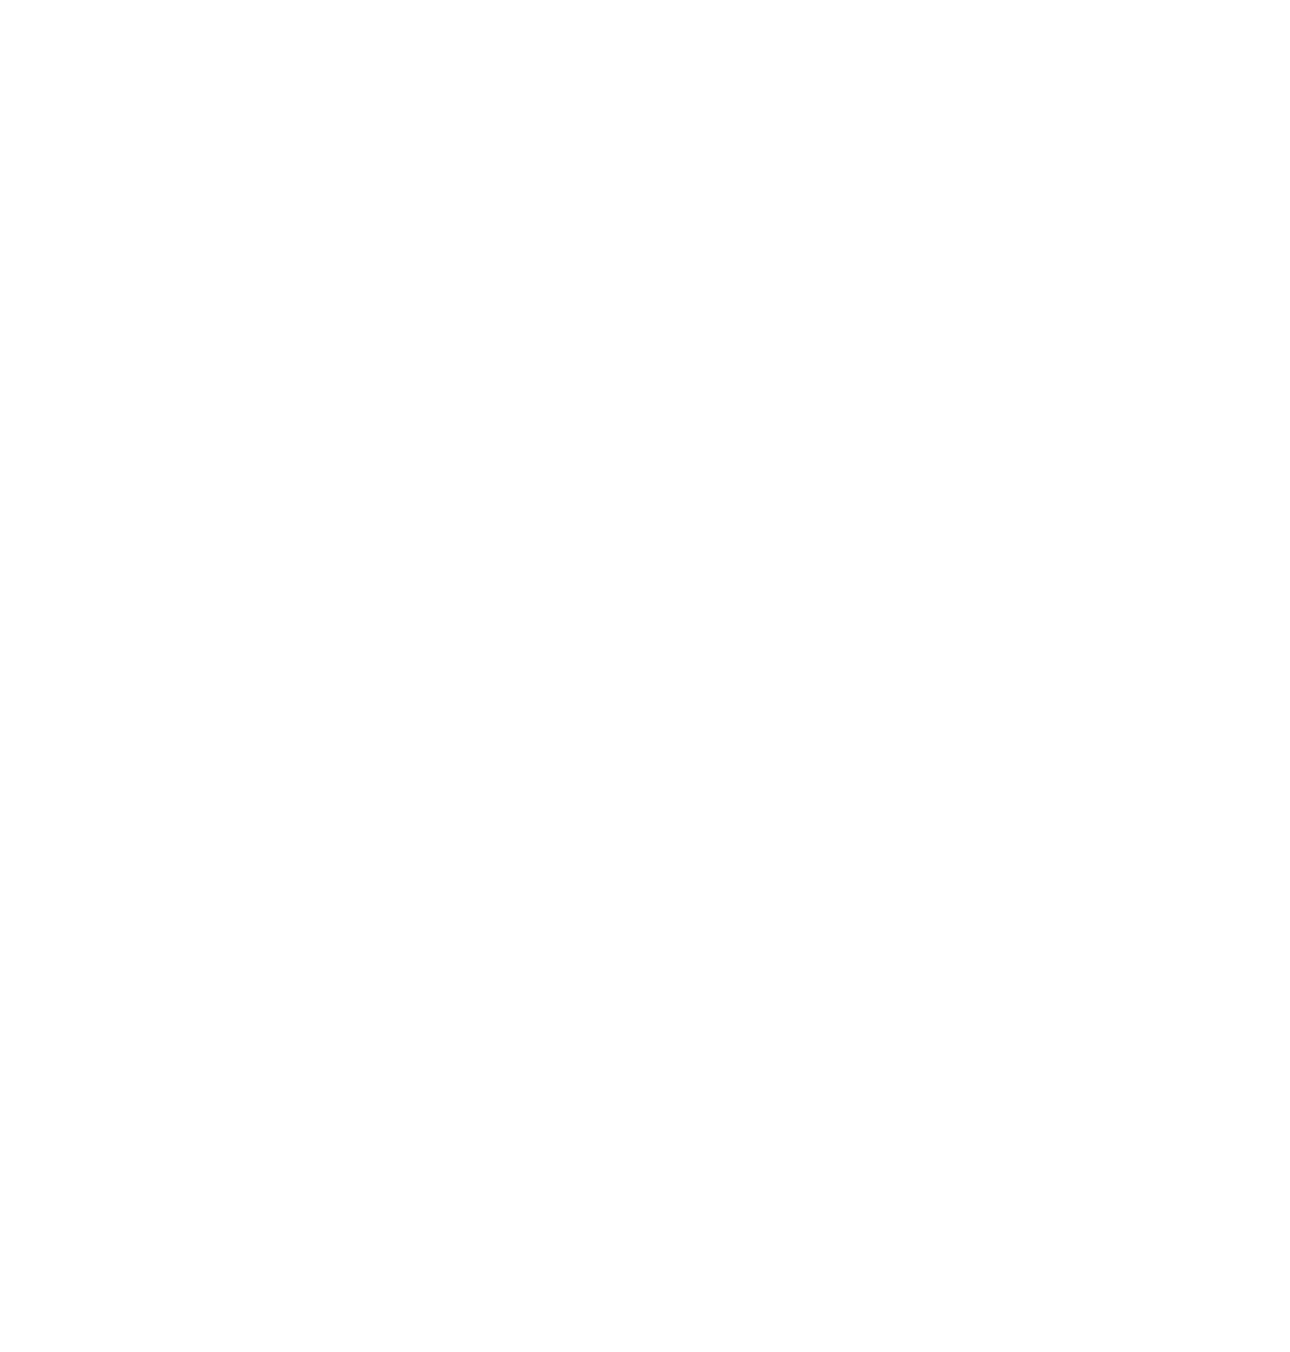 04_NET logo